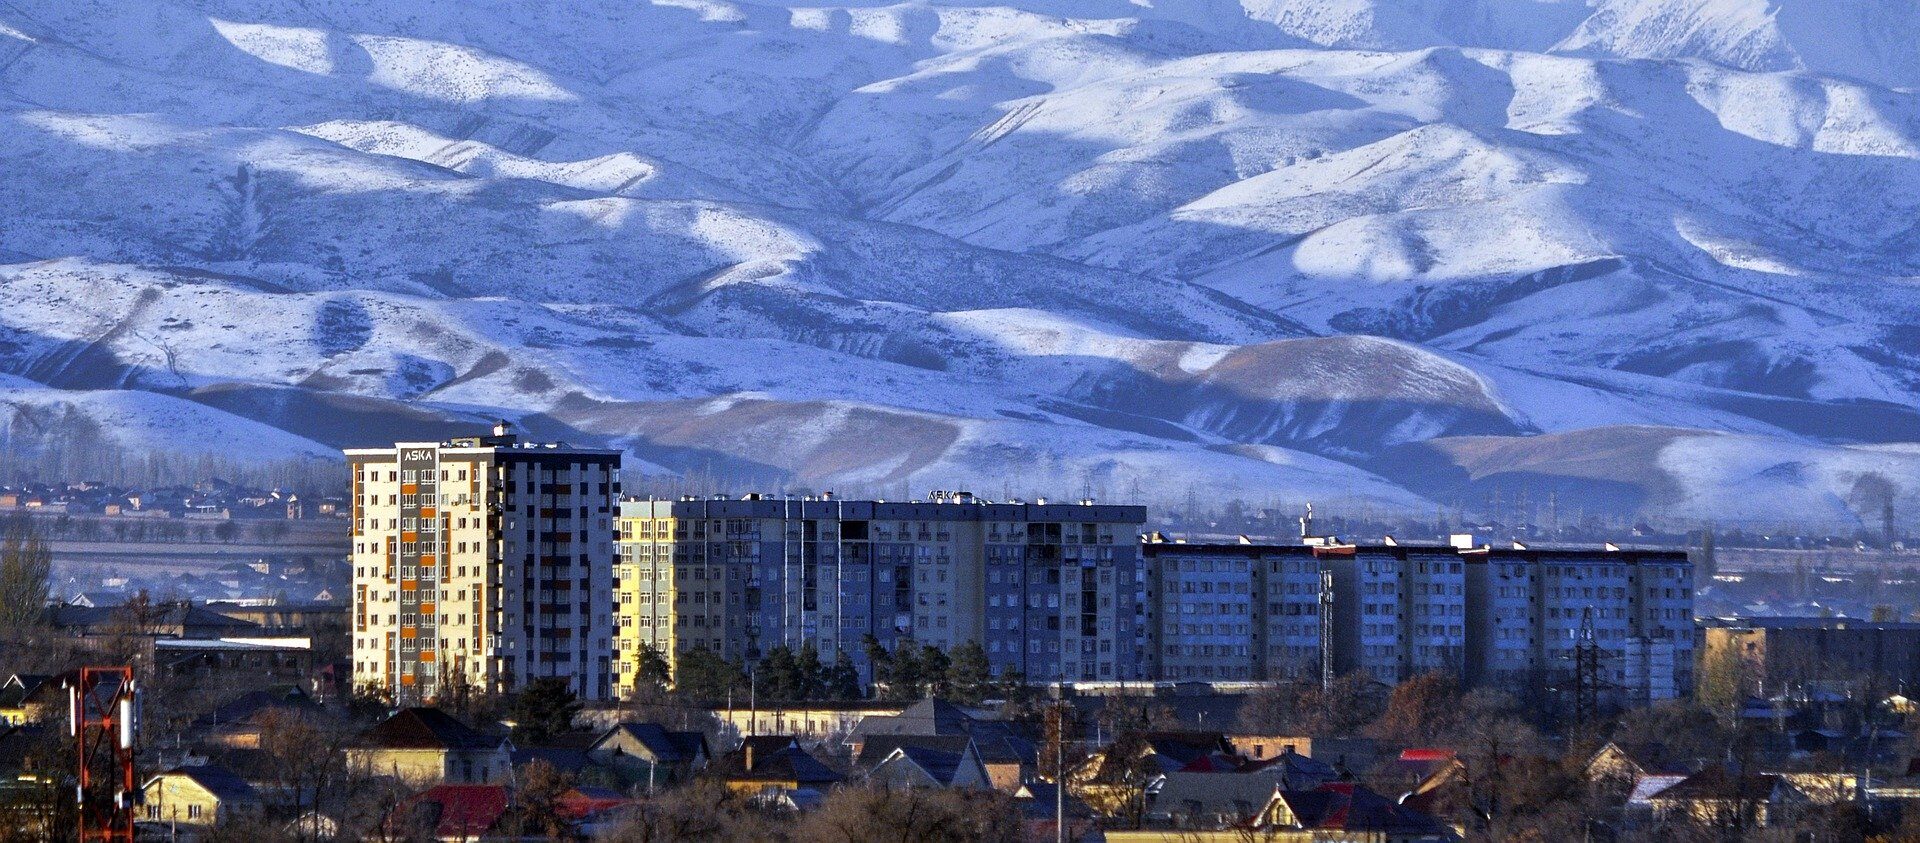 La future cathédrale s'élèvera dans la capitale du Kirghisztan Biškek | © Pixabay